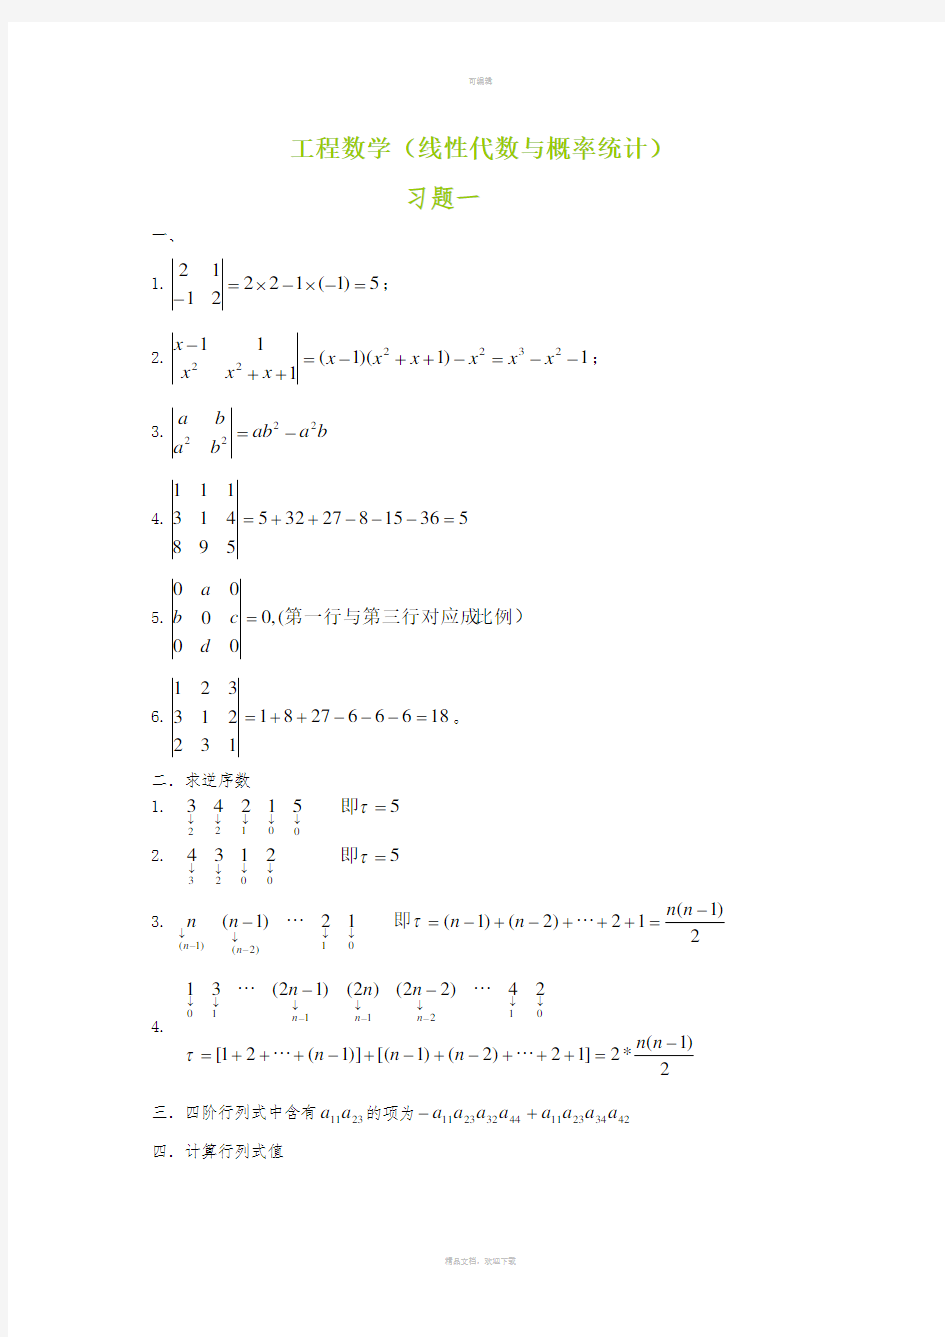 工程数学(线性代数与概率统计)答案(1章)